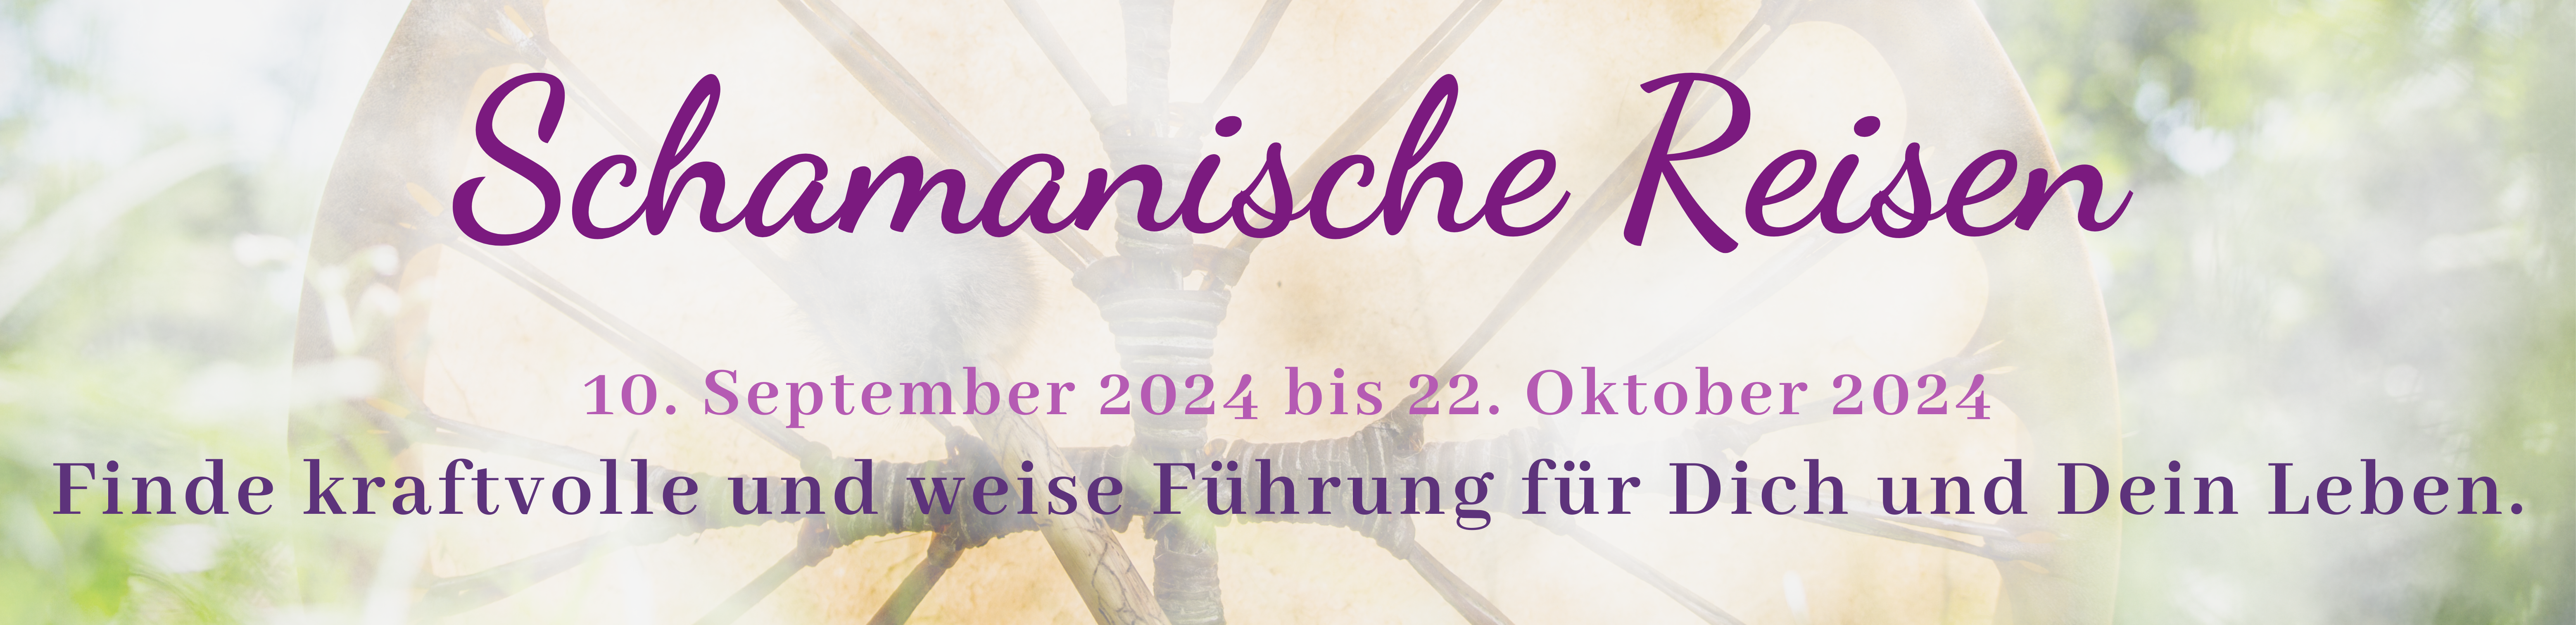 Schamanische Reisen 10.09. bis 22.10. 2024 Homepage Banner violett CANVA